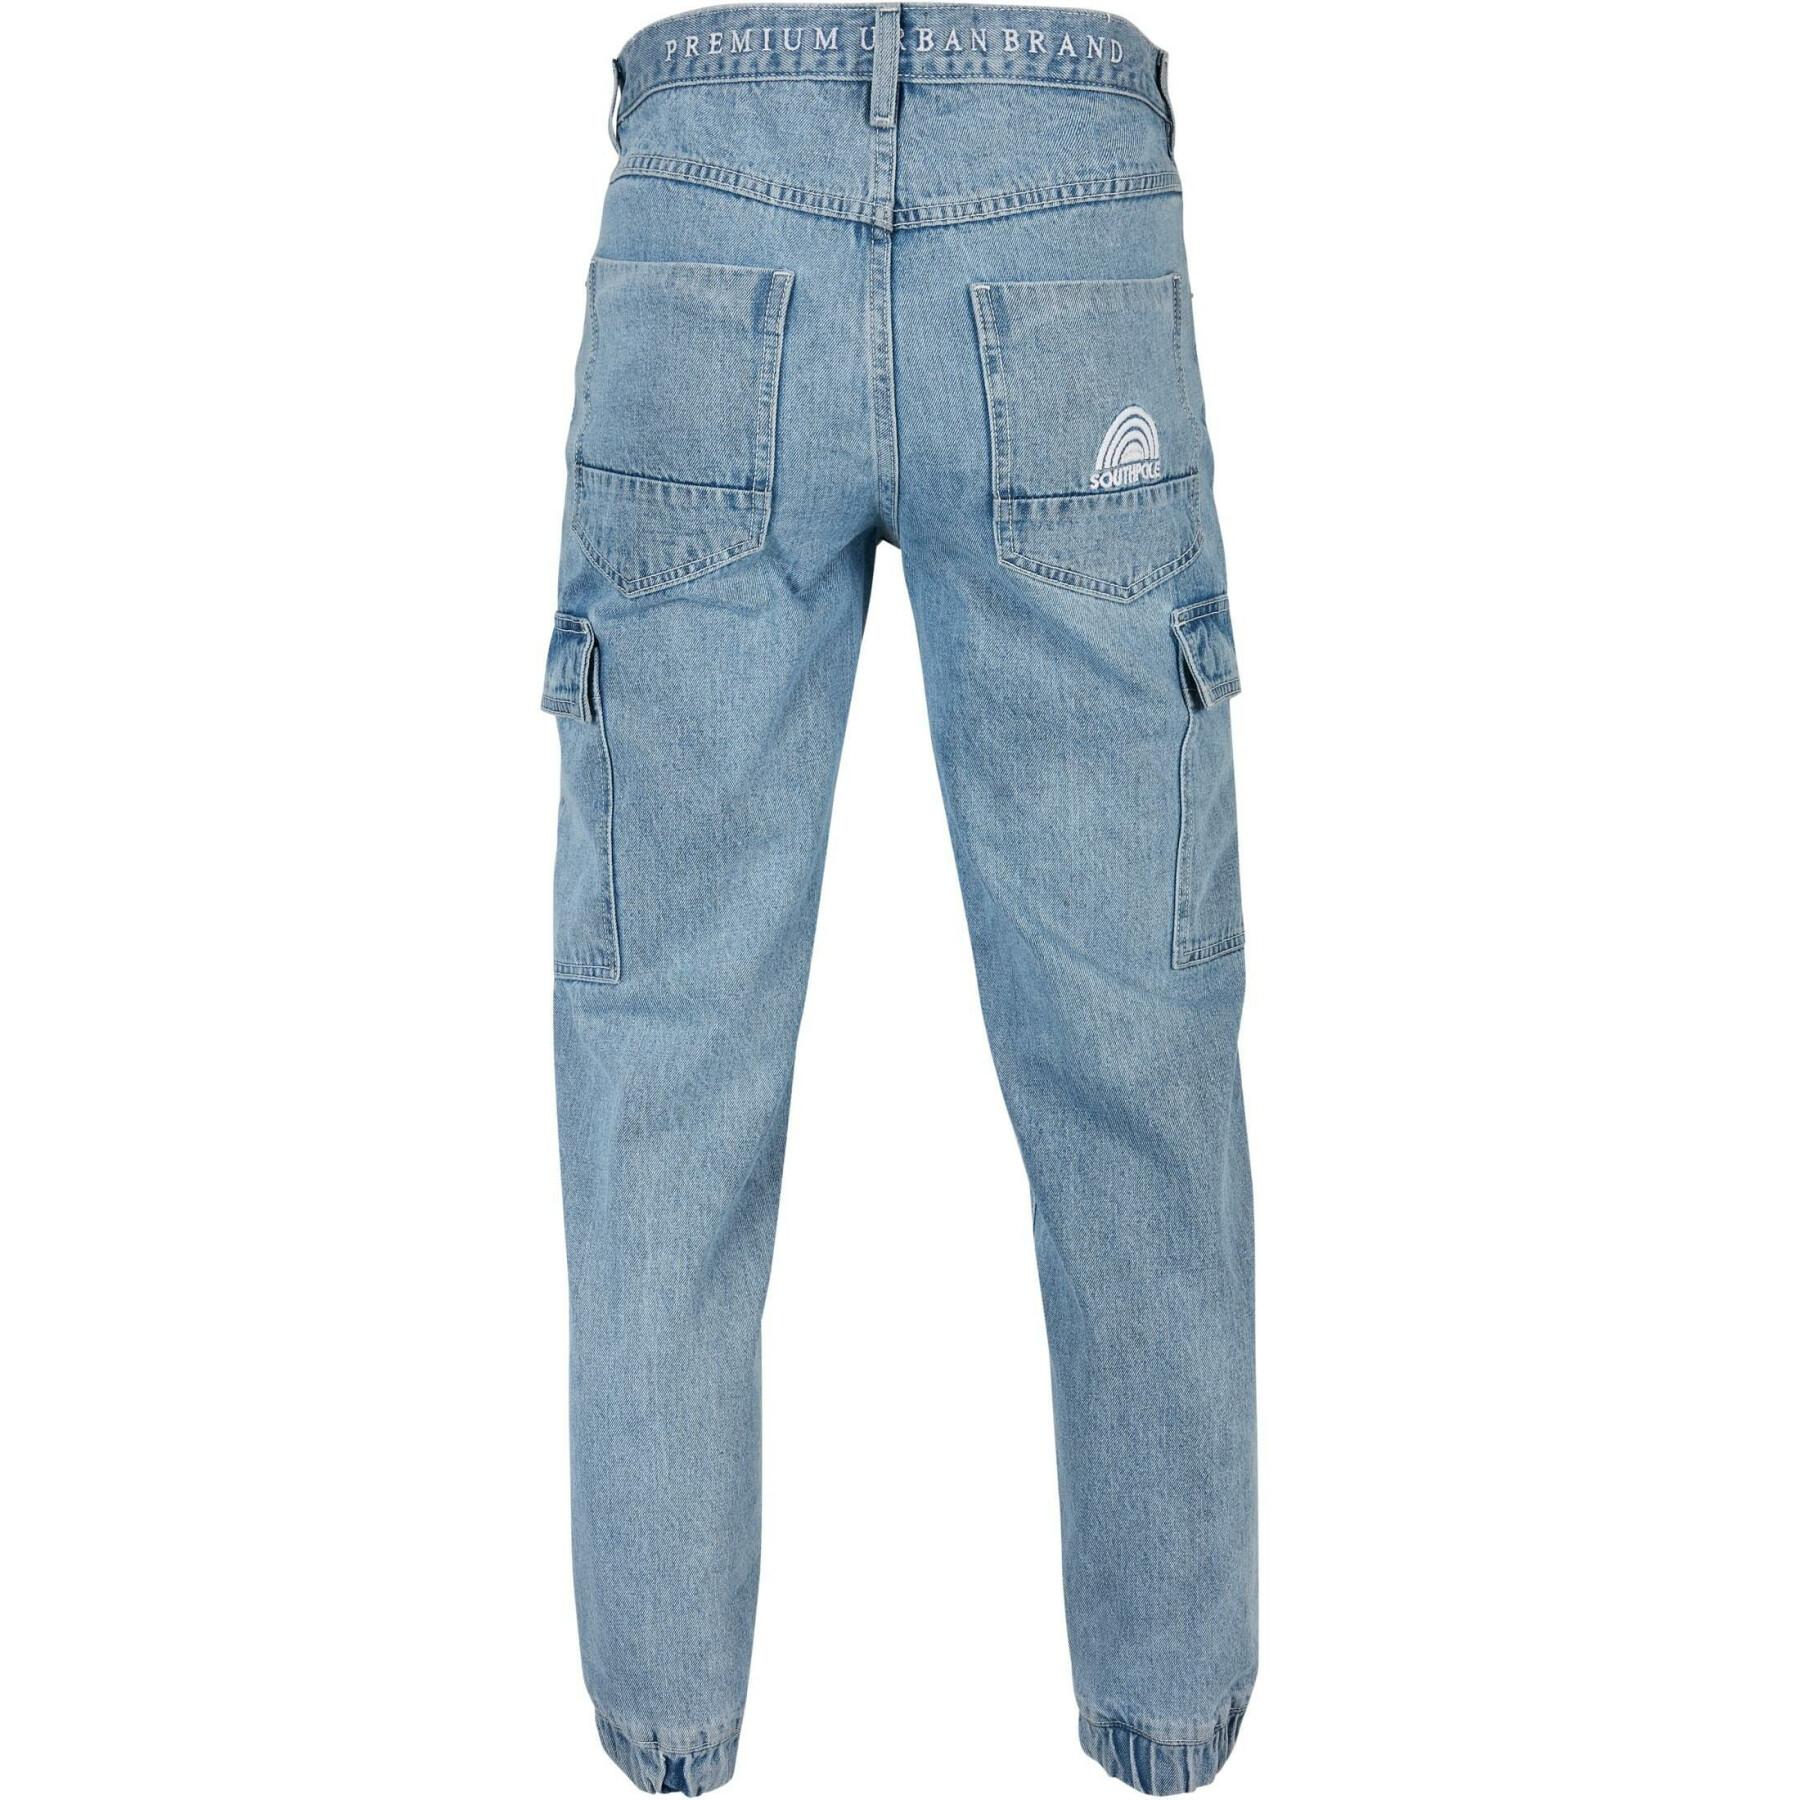 Cargo jeans met zakken Southpole